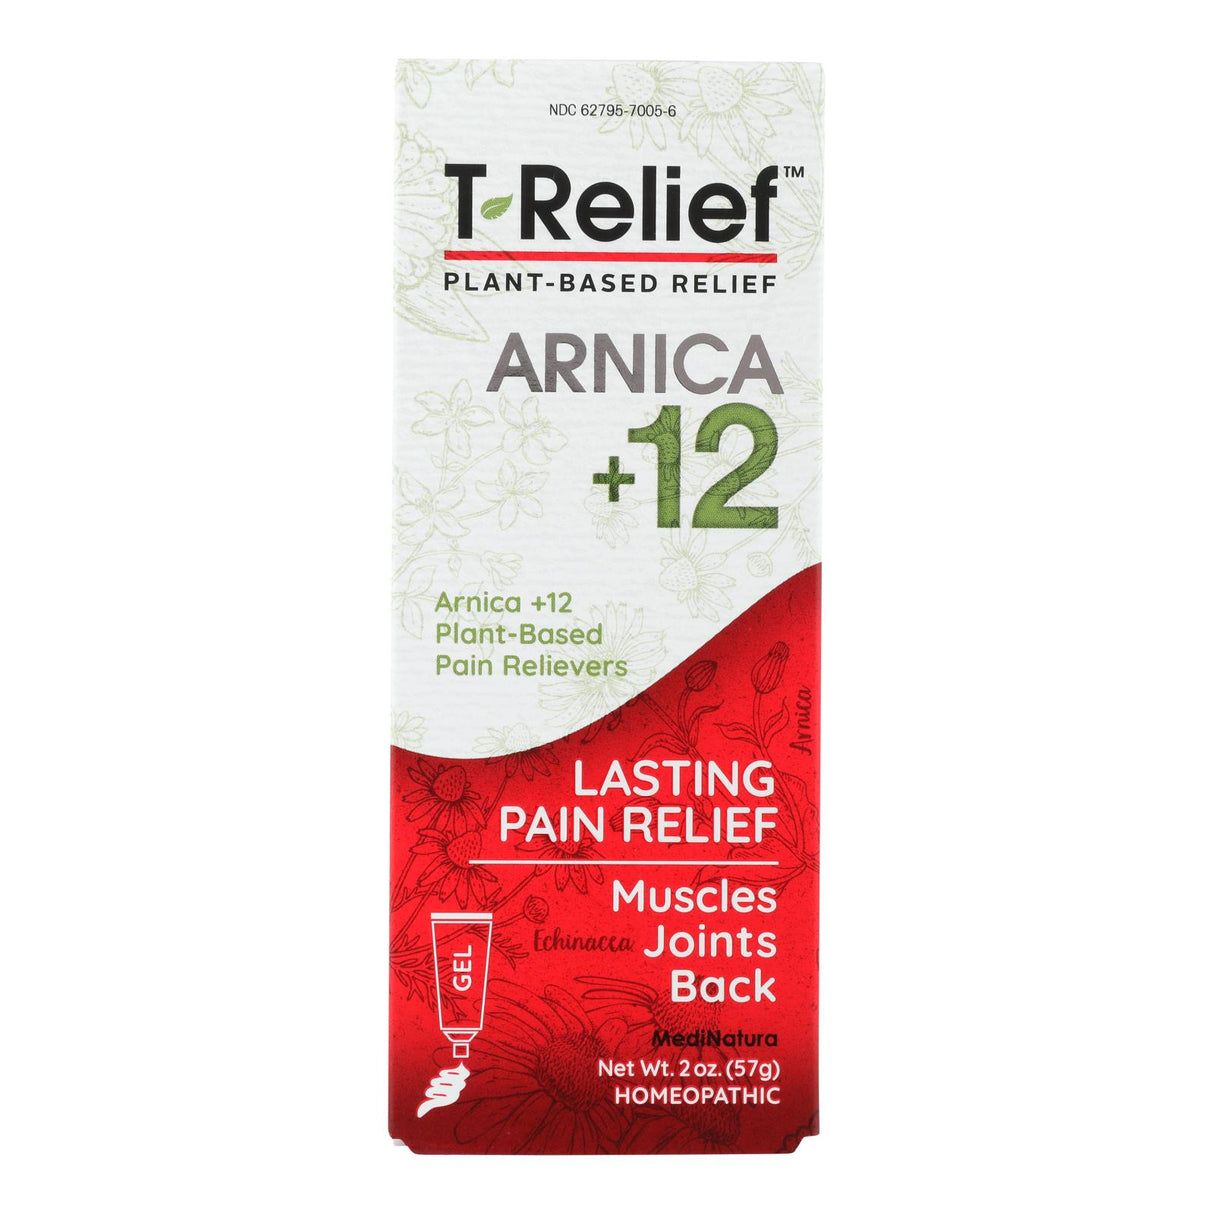 T-Relief Medinatura Pain Relief Gel, Original Formula, 2 Oz - Cozy Farm 